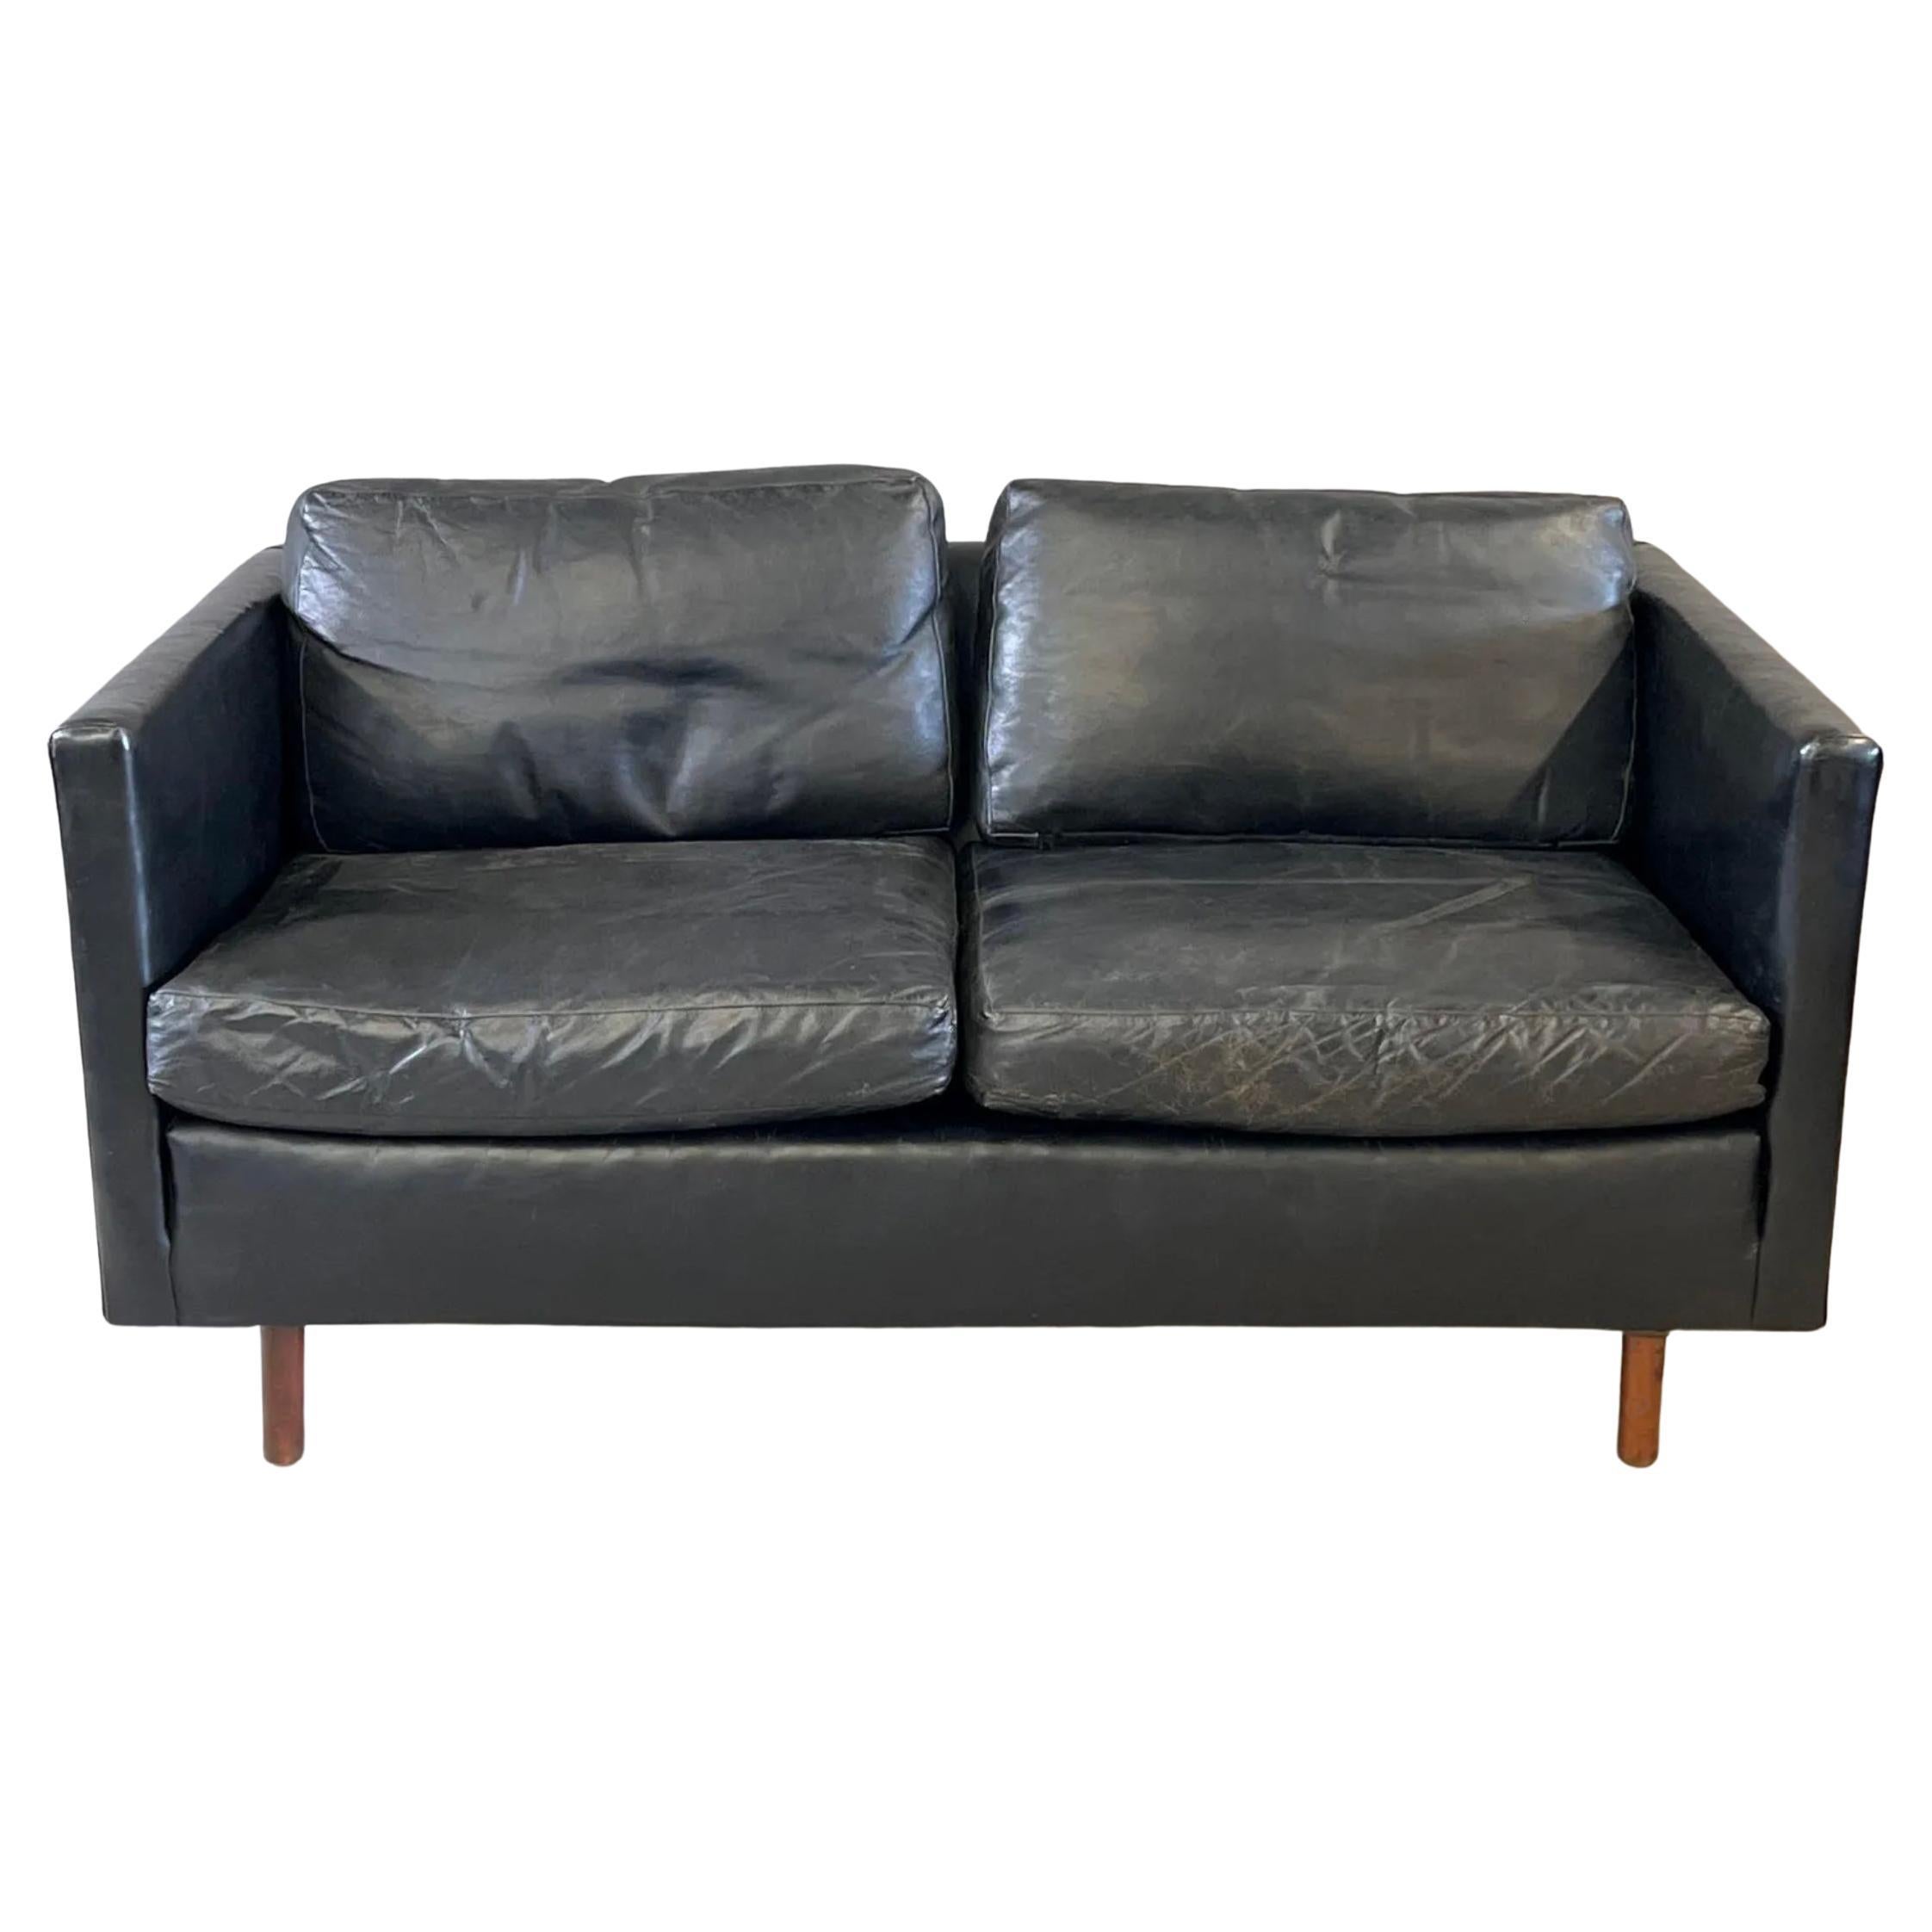 Magnifique canapé danois moderne du milieu du siècle en cuir noir à 2 places avec pieds ronds en teck